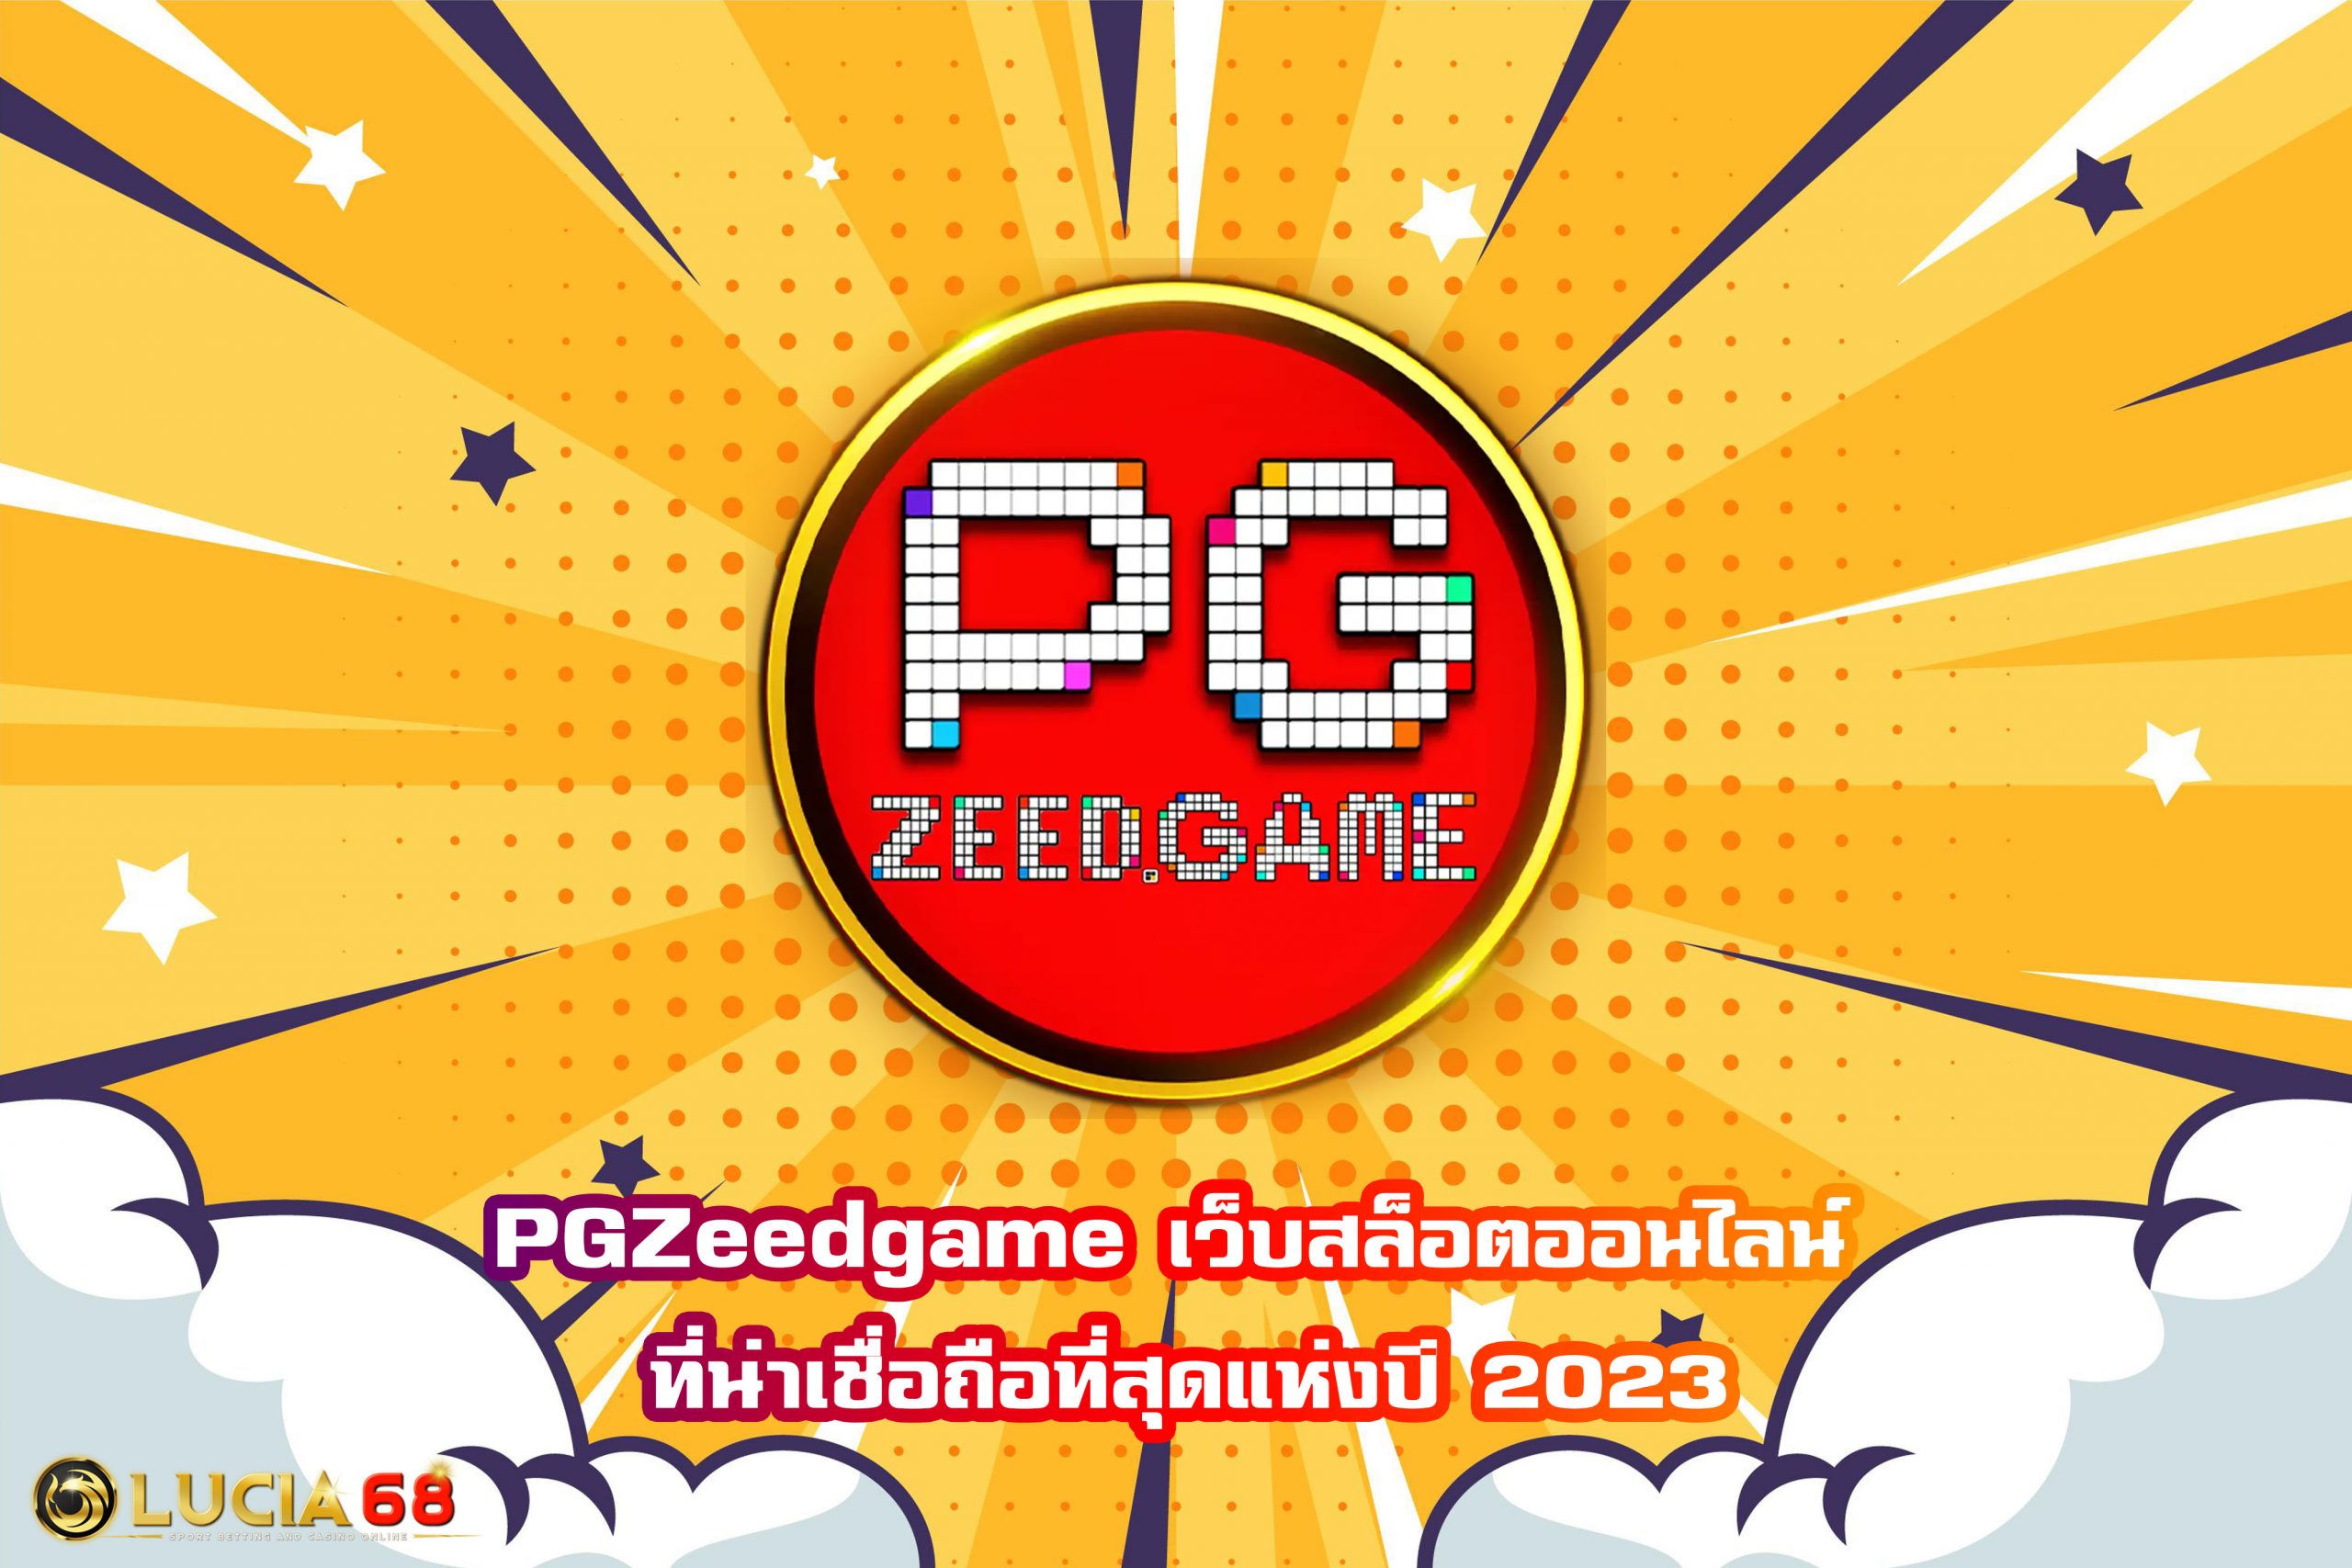 PGZeedgame เว็บสล็อตออนไลน์ ที่น่าเชื่อถือที่สุดแห่งปี 2023